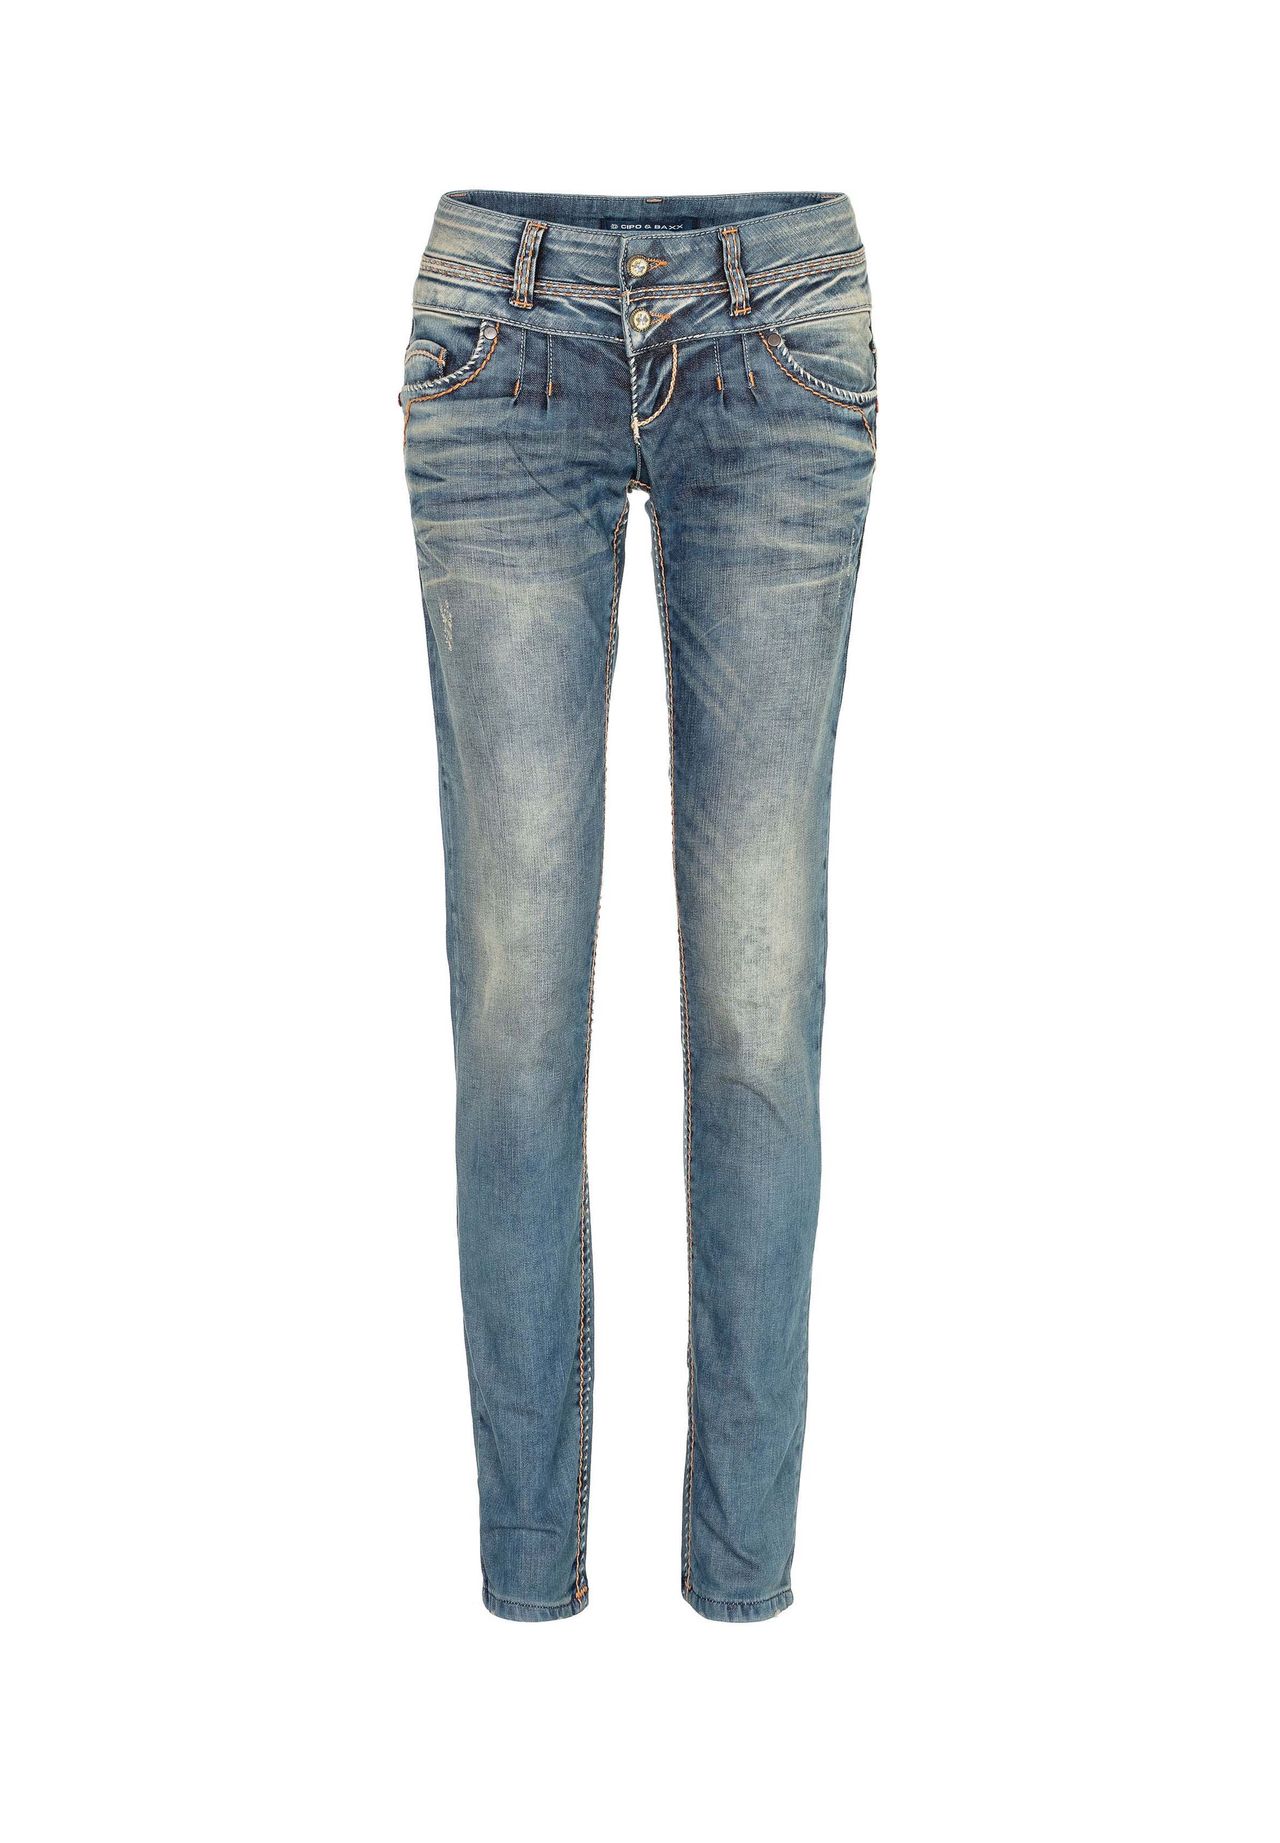 Jeans 30 32 kaufen | GALERIA